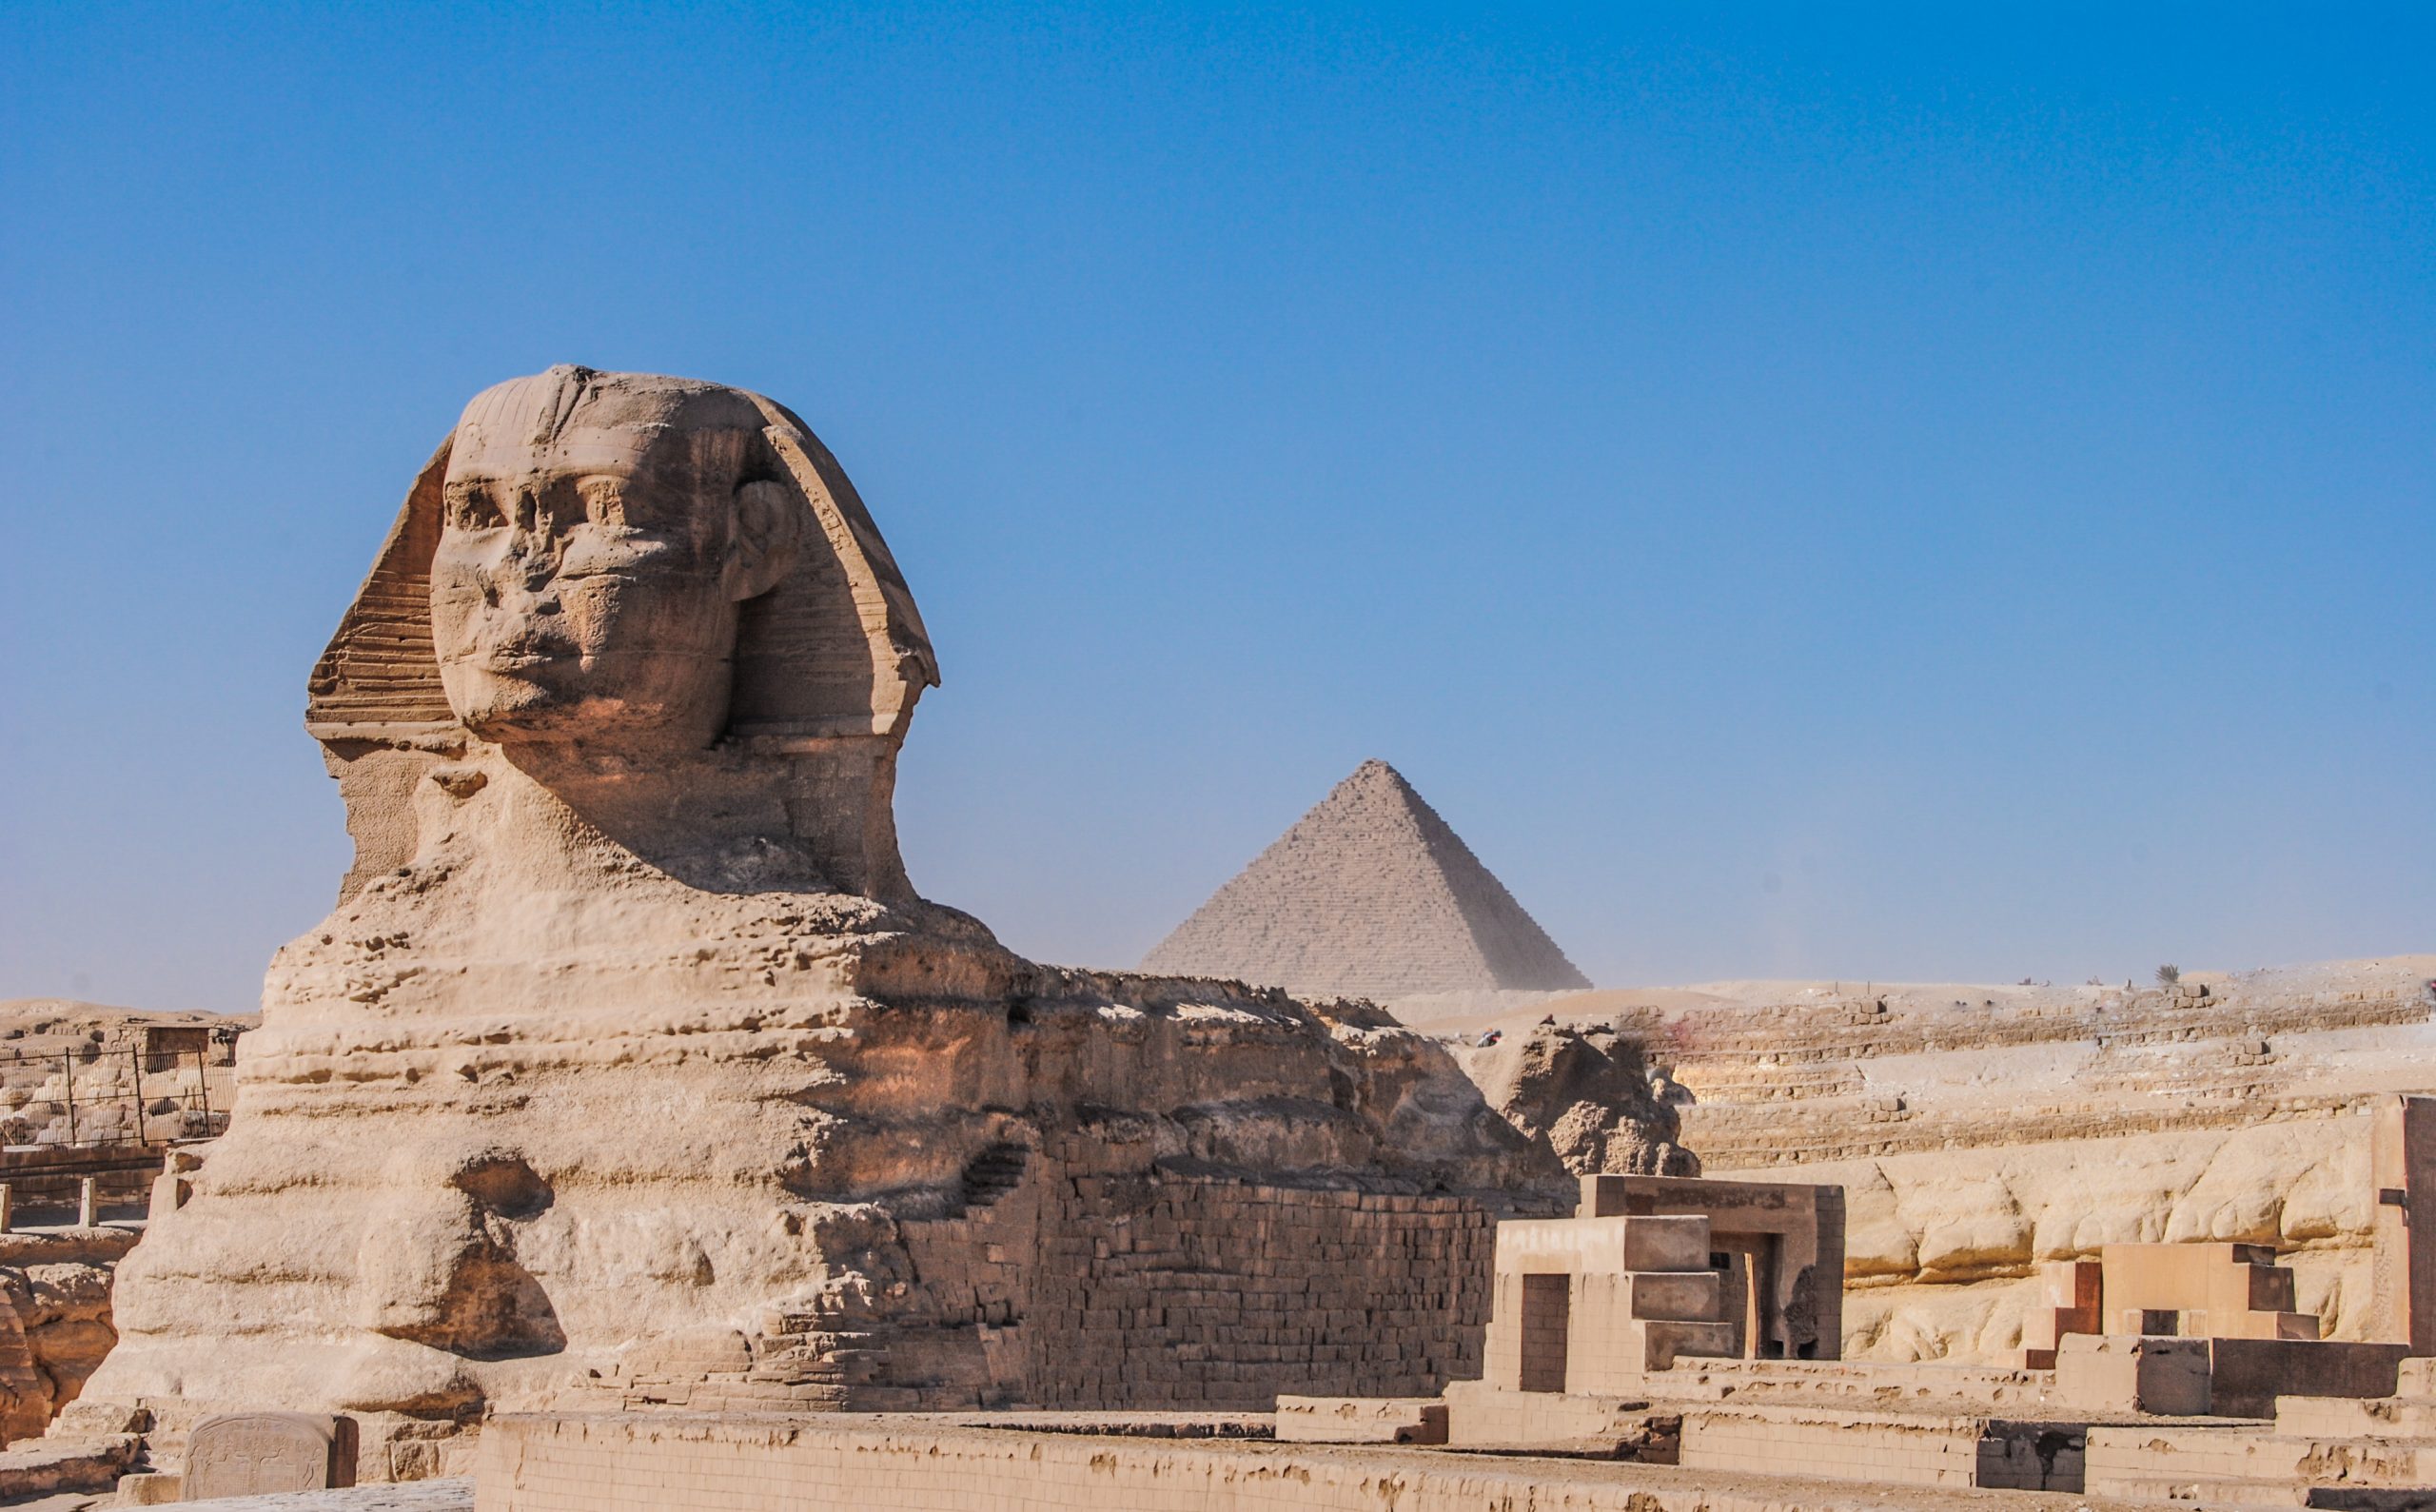 Sfinxul din Egipt, cea de-a opta minune a lumii